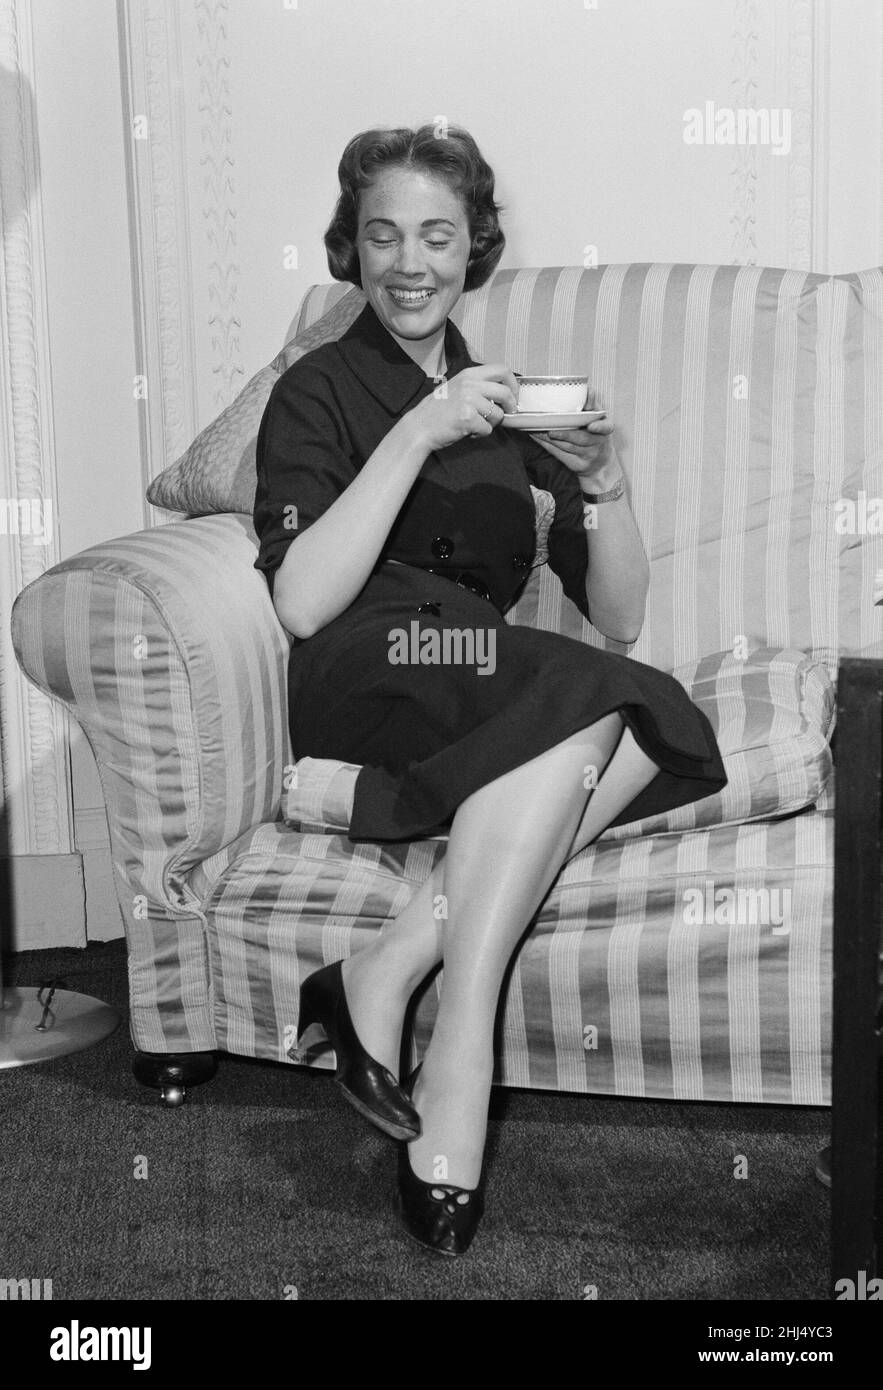 Julie Andrews, la jeune actrice de 24 ans jouant le rôle d'Eliza Doolittle dans My Fair Lady.Dame Julia Elizabeth 'Julie' Andrews, DBE (n?e Wells; née le 1 octobre 1935) est une actrice, chanteuse, auteure, réalisatrice de théâtre et danseuse anglaise.[ Andrews, actrice et chanteuse pour enfants, est apparue sur le West End en 1948 et a fait ses débuts à Broadway dans le Boy Friend (1954).Elle est montée en vedette dans des comédies musicales de Broadway comme My Fair Lady (1956), jouant Eliza Doolittle, et Camelot (1960), jouant Queen Guinevere.En 1957, Andrews a joué dans la première de Rodgers et Hammerstein écrit-pour- Banque D'Images